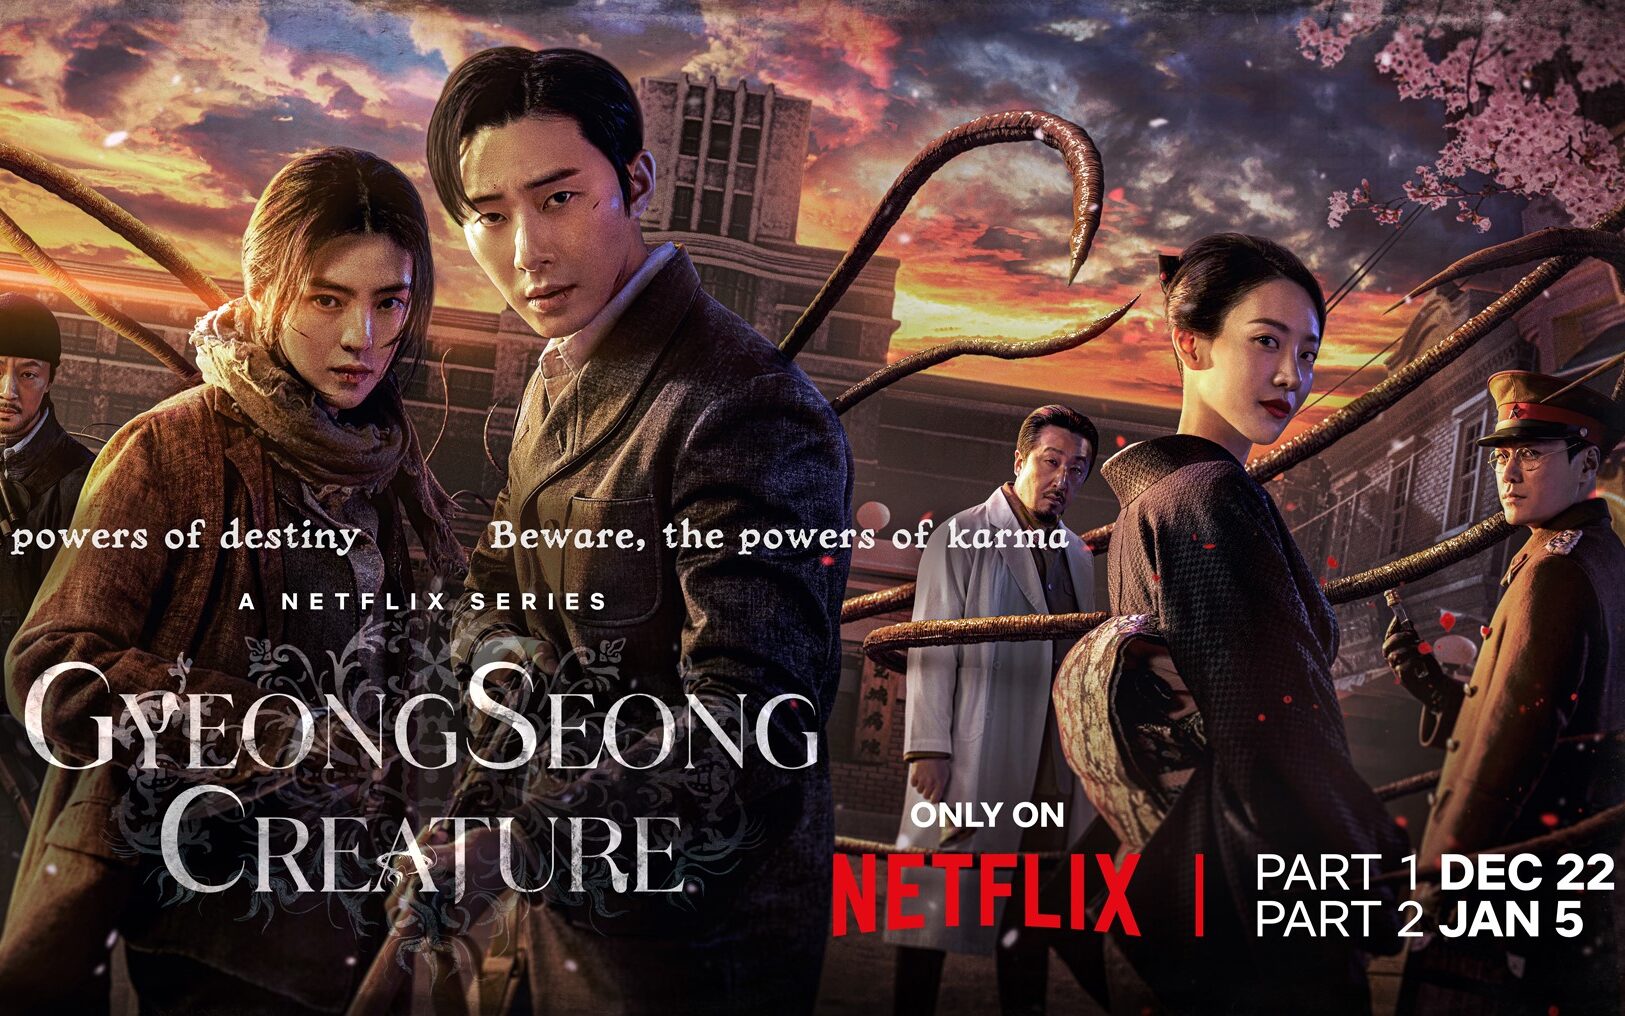 Gyeongseong Creature on Netflix teaser trailer TV Central